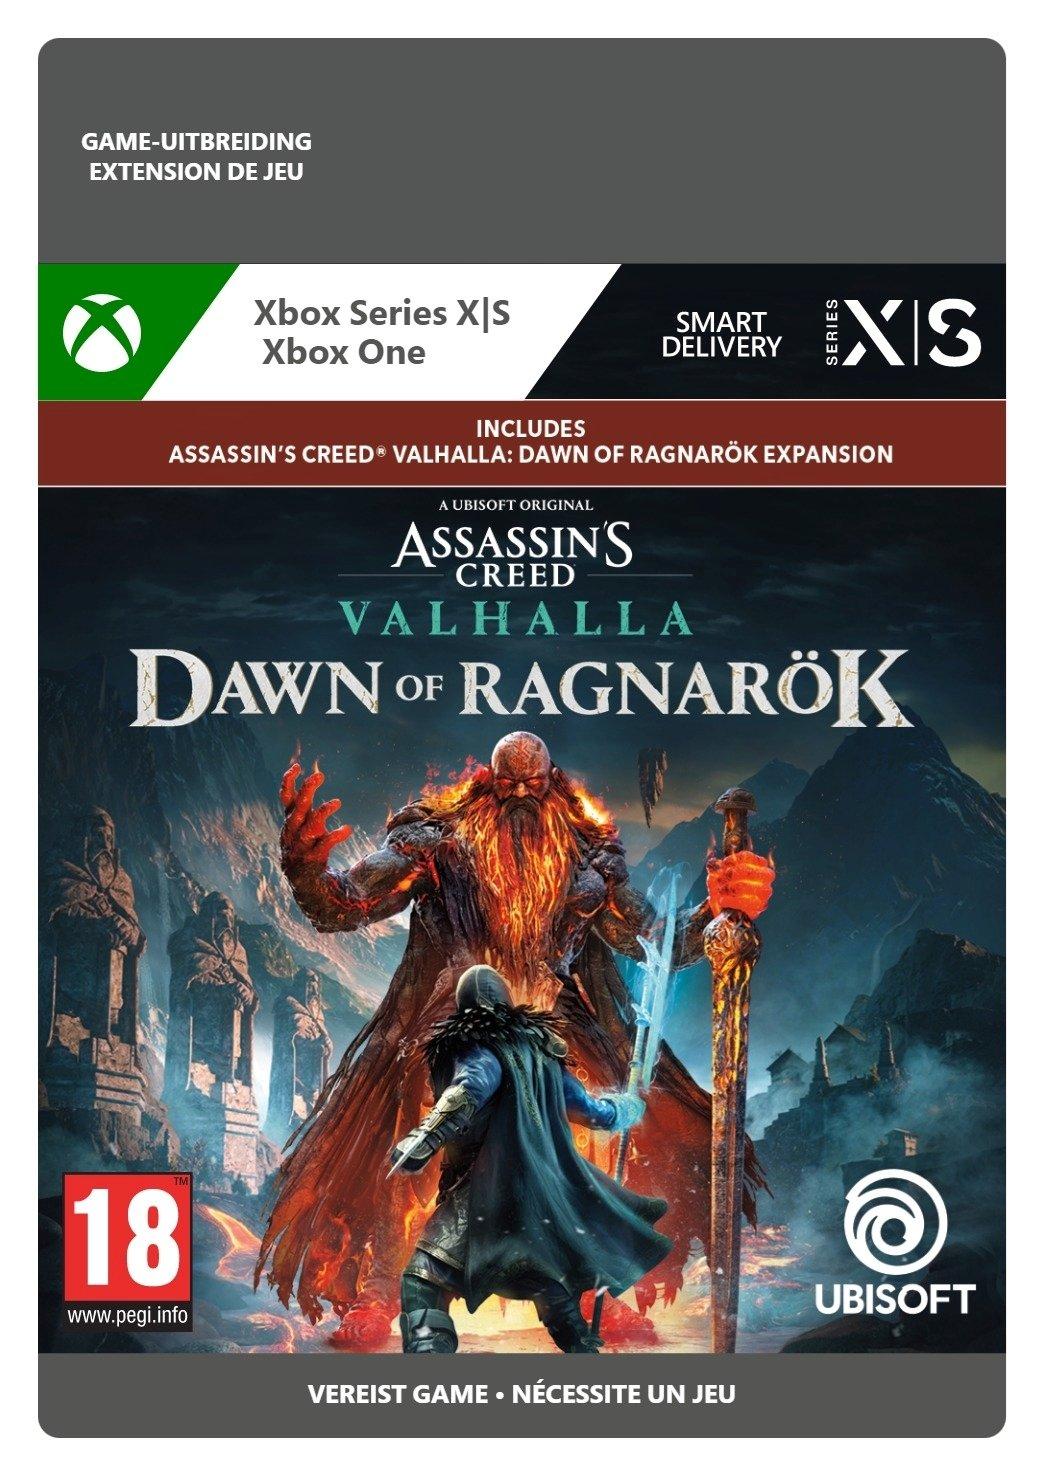 Assassin's Creed Valhalla: Dawn of Ragnarök - Xbox Series X/Xbox One - Add-on | 7D4-00636 (7a6ce637-530e-5e4e-ba62-62f7fbc870ac)